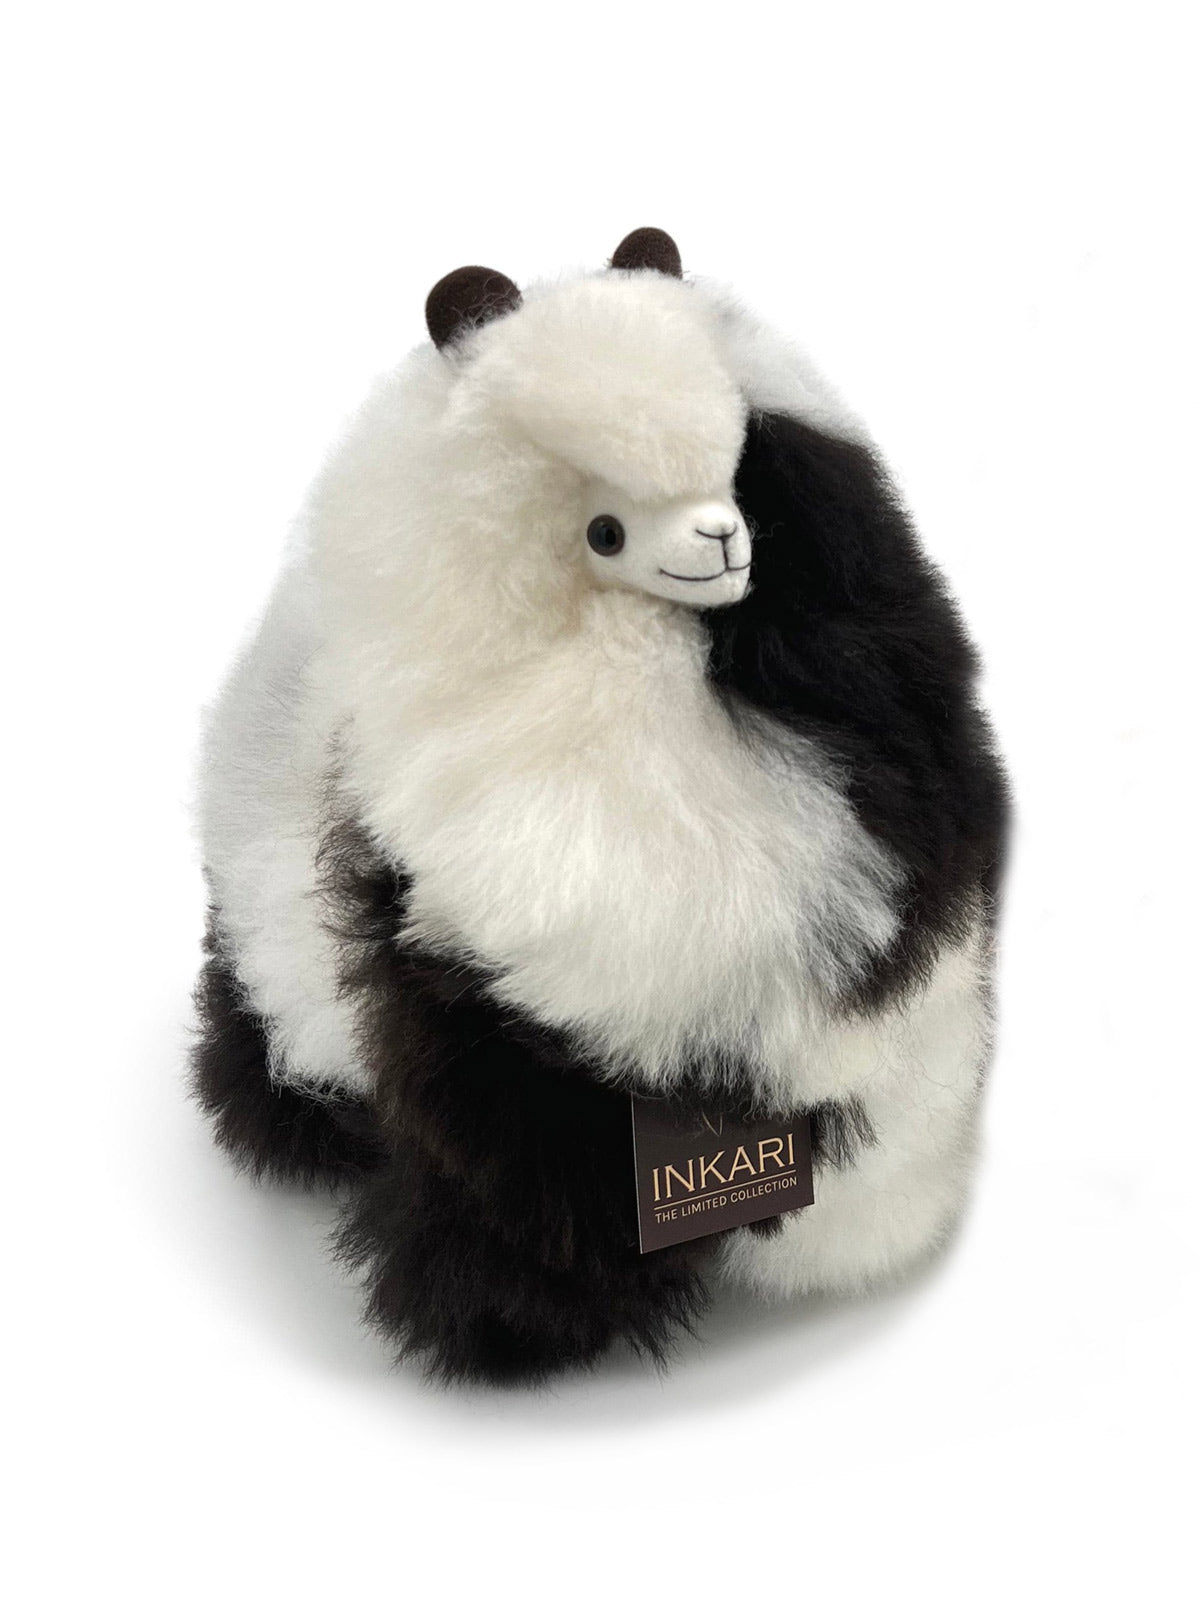 Inkari Alpaca soft toy-Limited Edition-ORCA-Medium 32cm